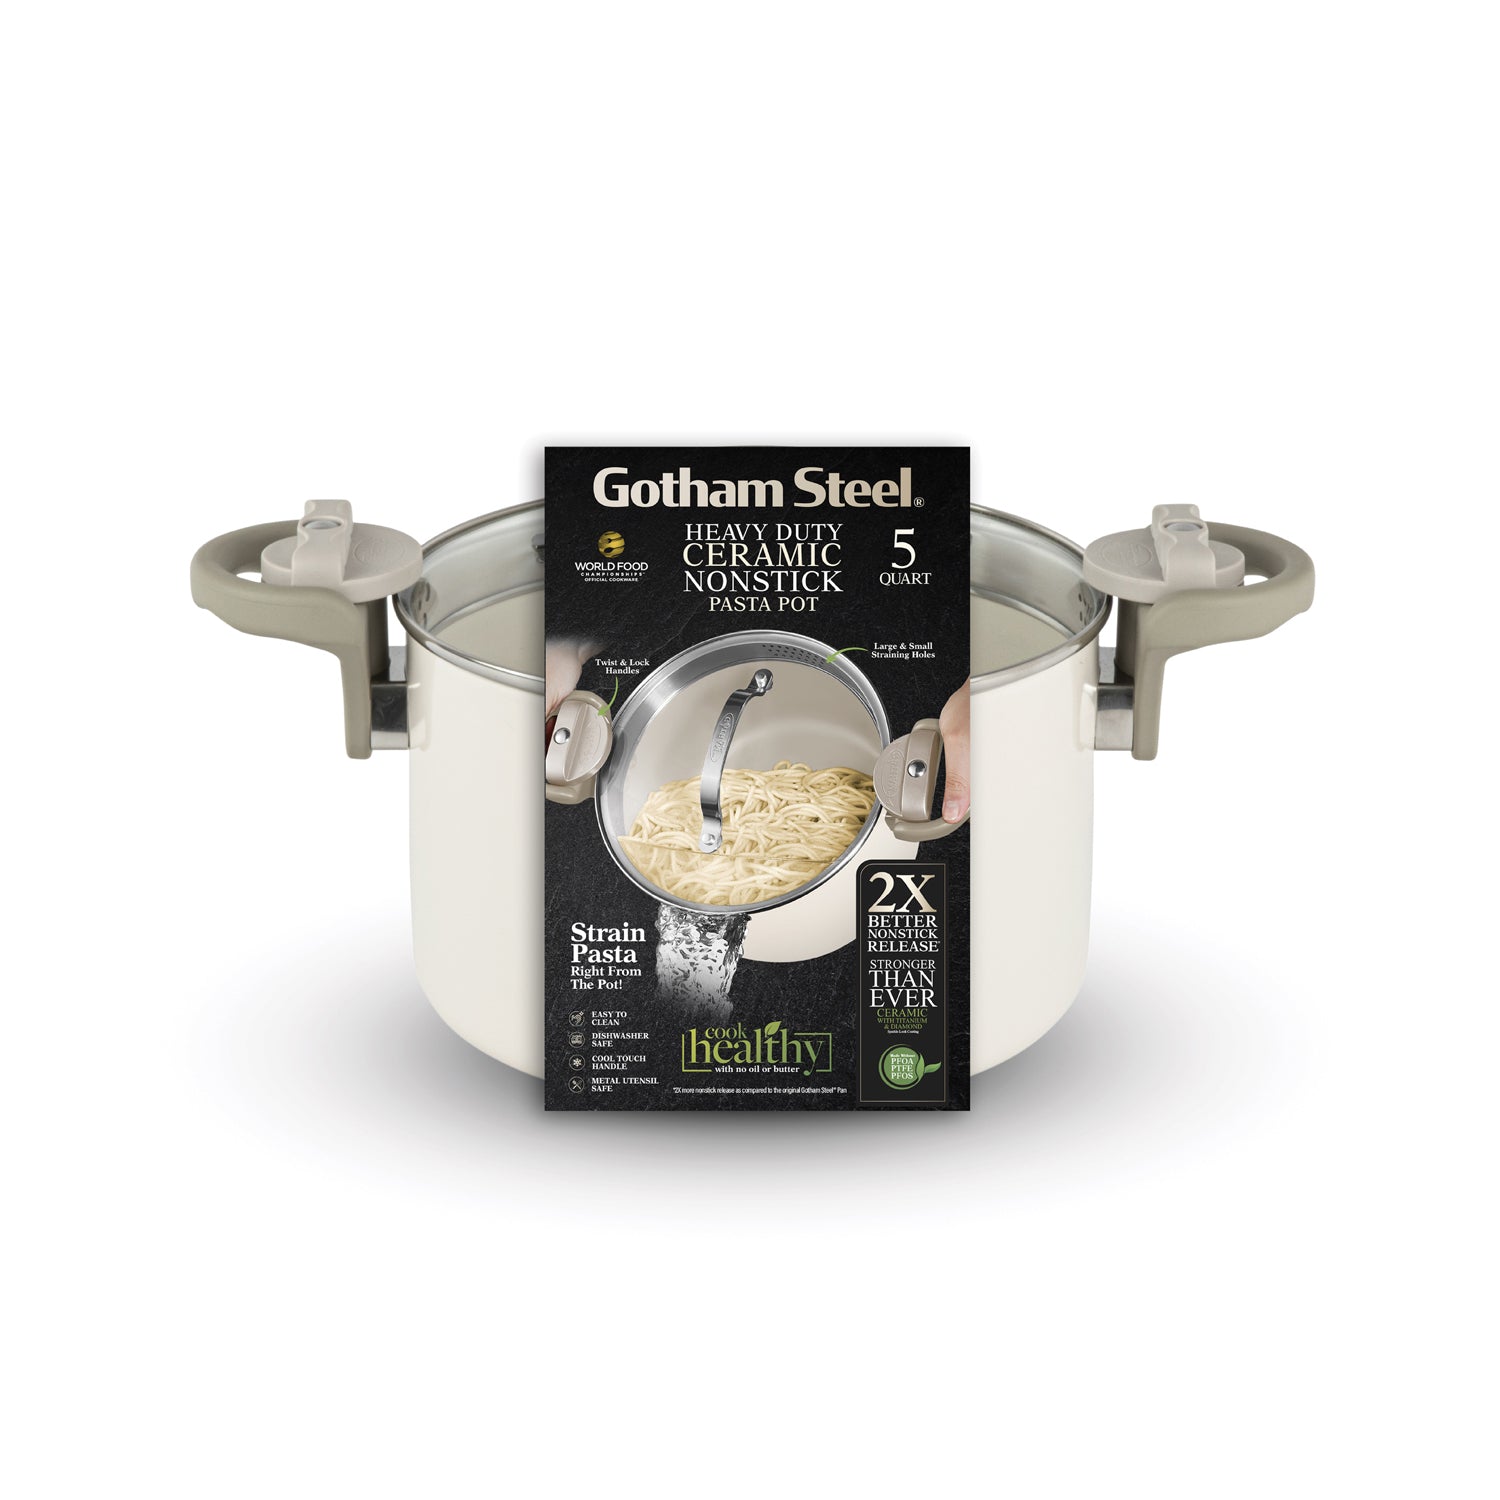 Gotham Steel Pasta Pot (5 quart)